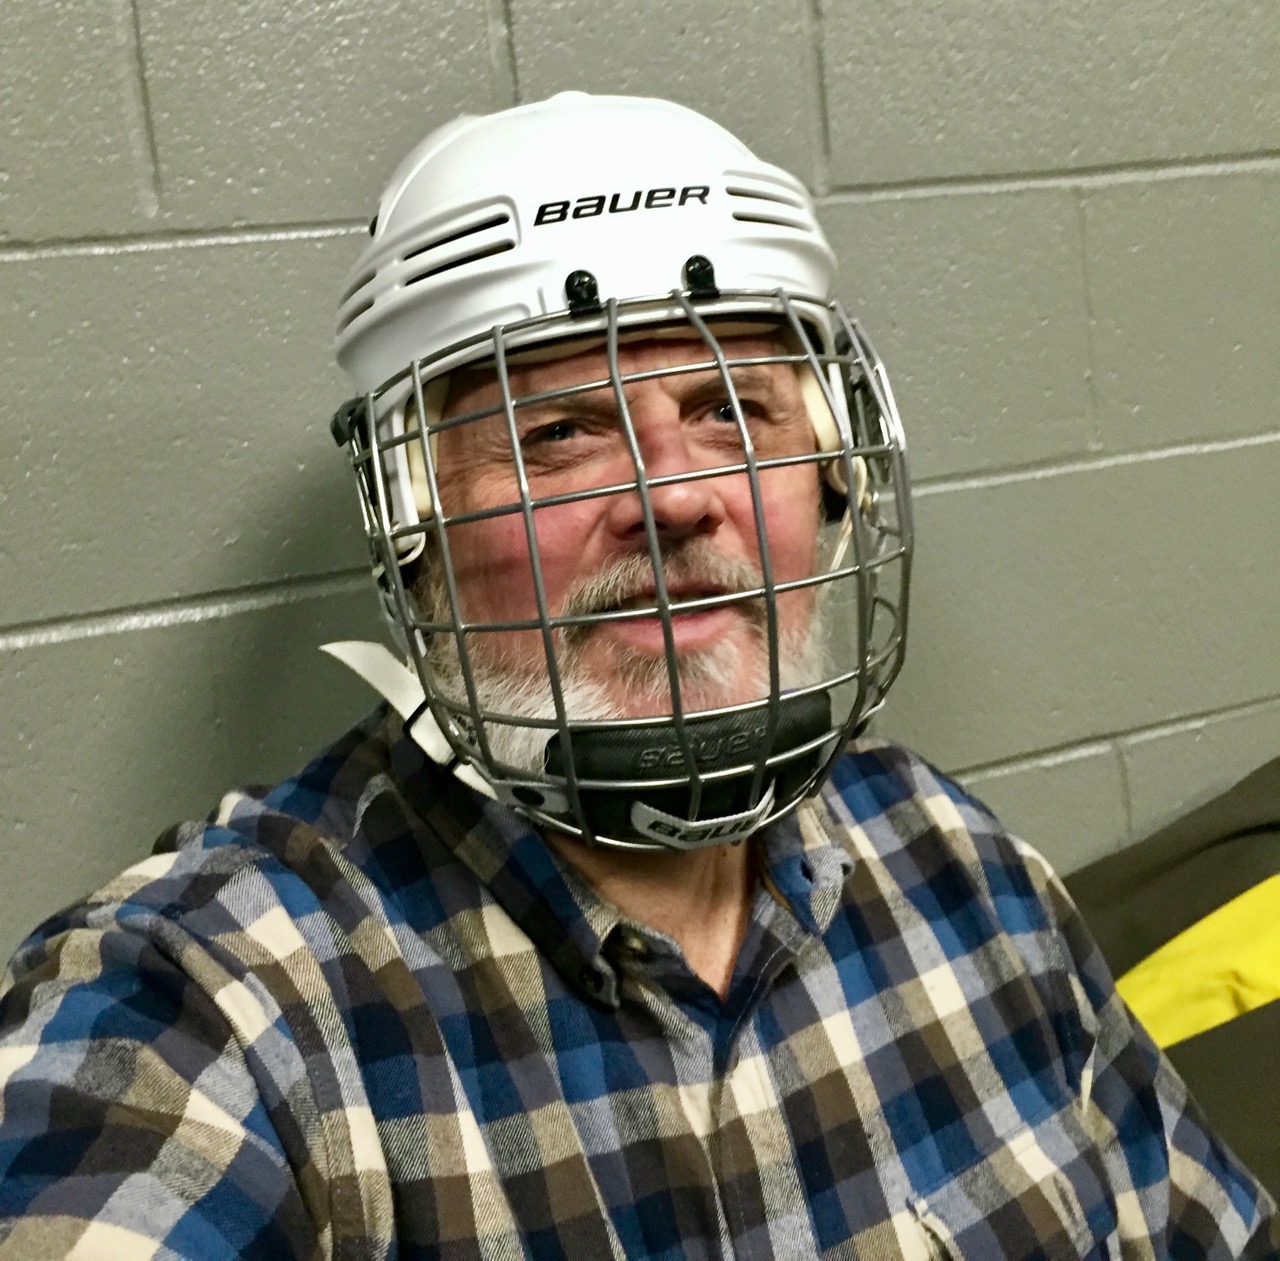 Dan in his hockey helmet and mask